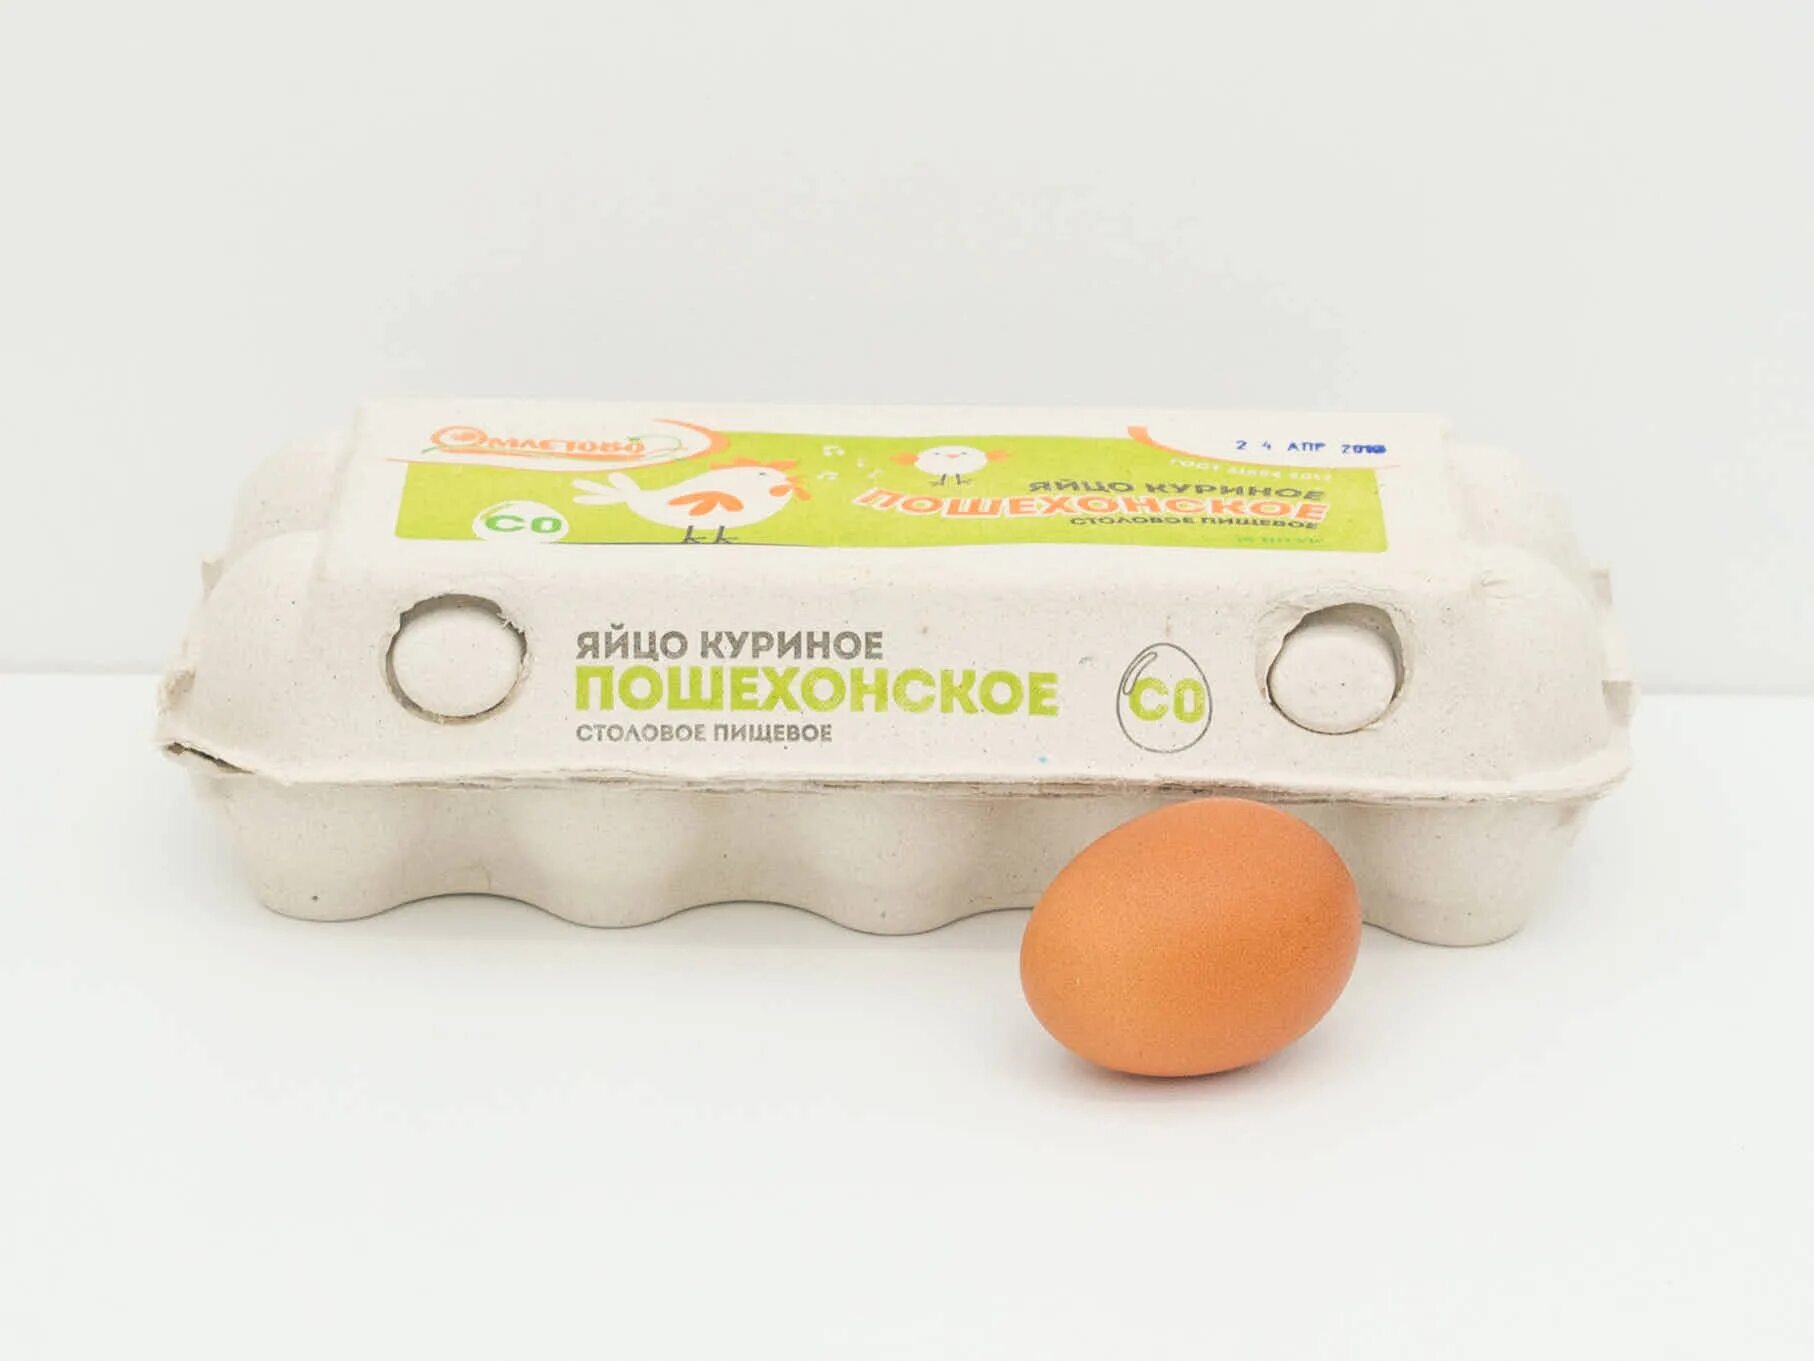 Яйца с0 или с2. Яйцо куриное термо 10 шт. Яйцо куриное с0. Яйцо 10шт куриное со в упаковке. Яйцо куриное (10 штук).